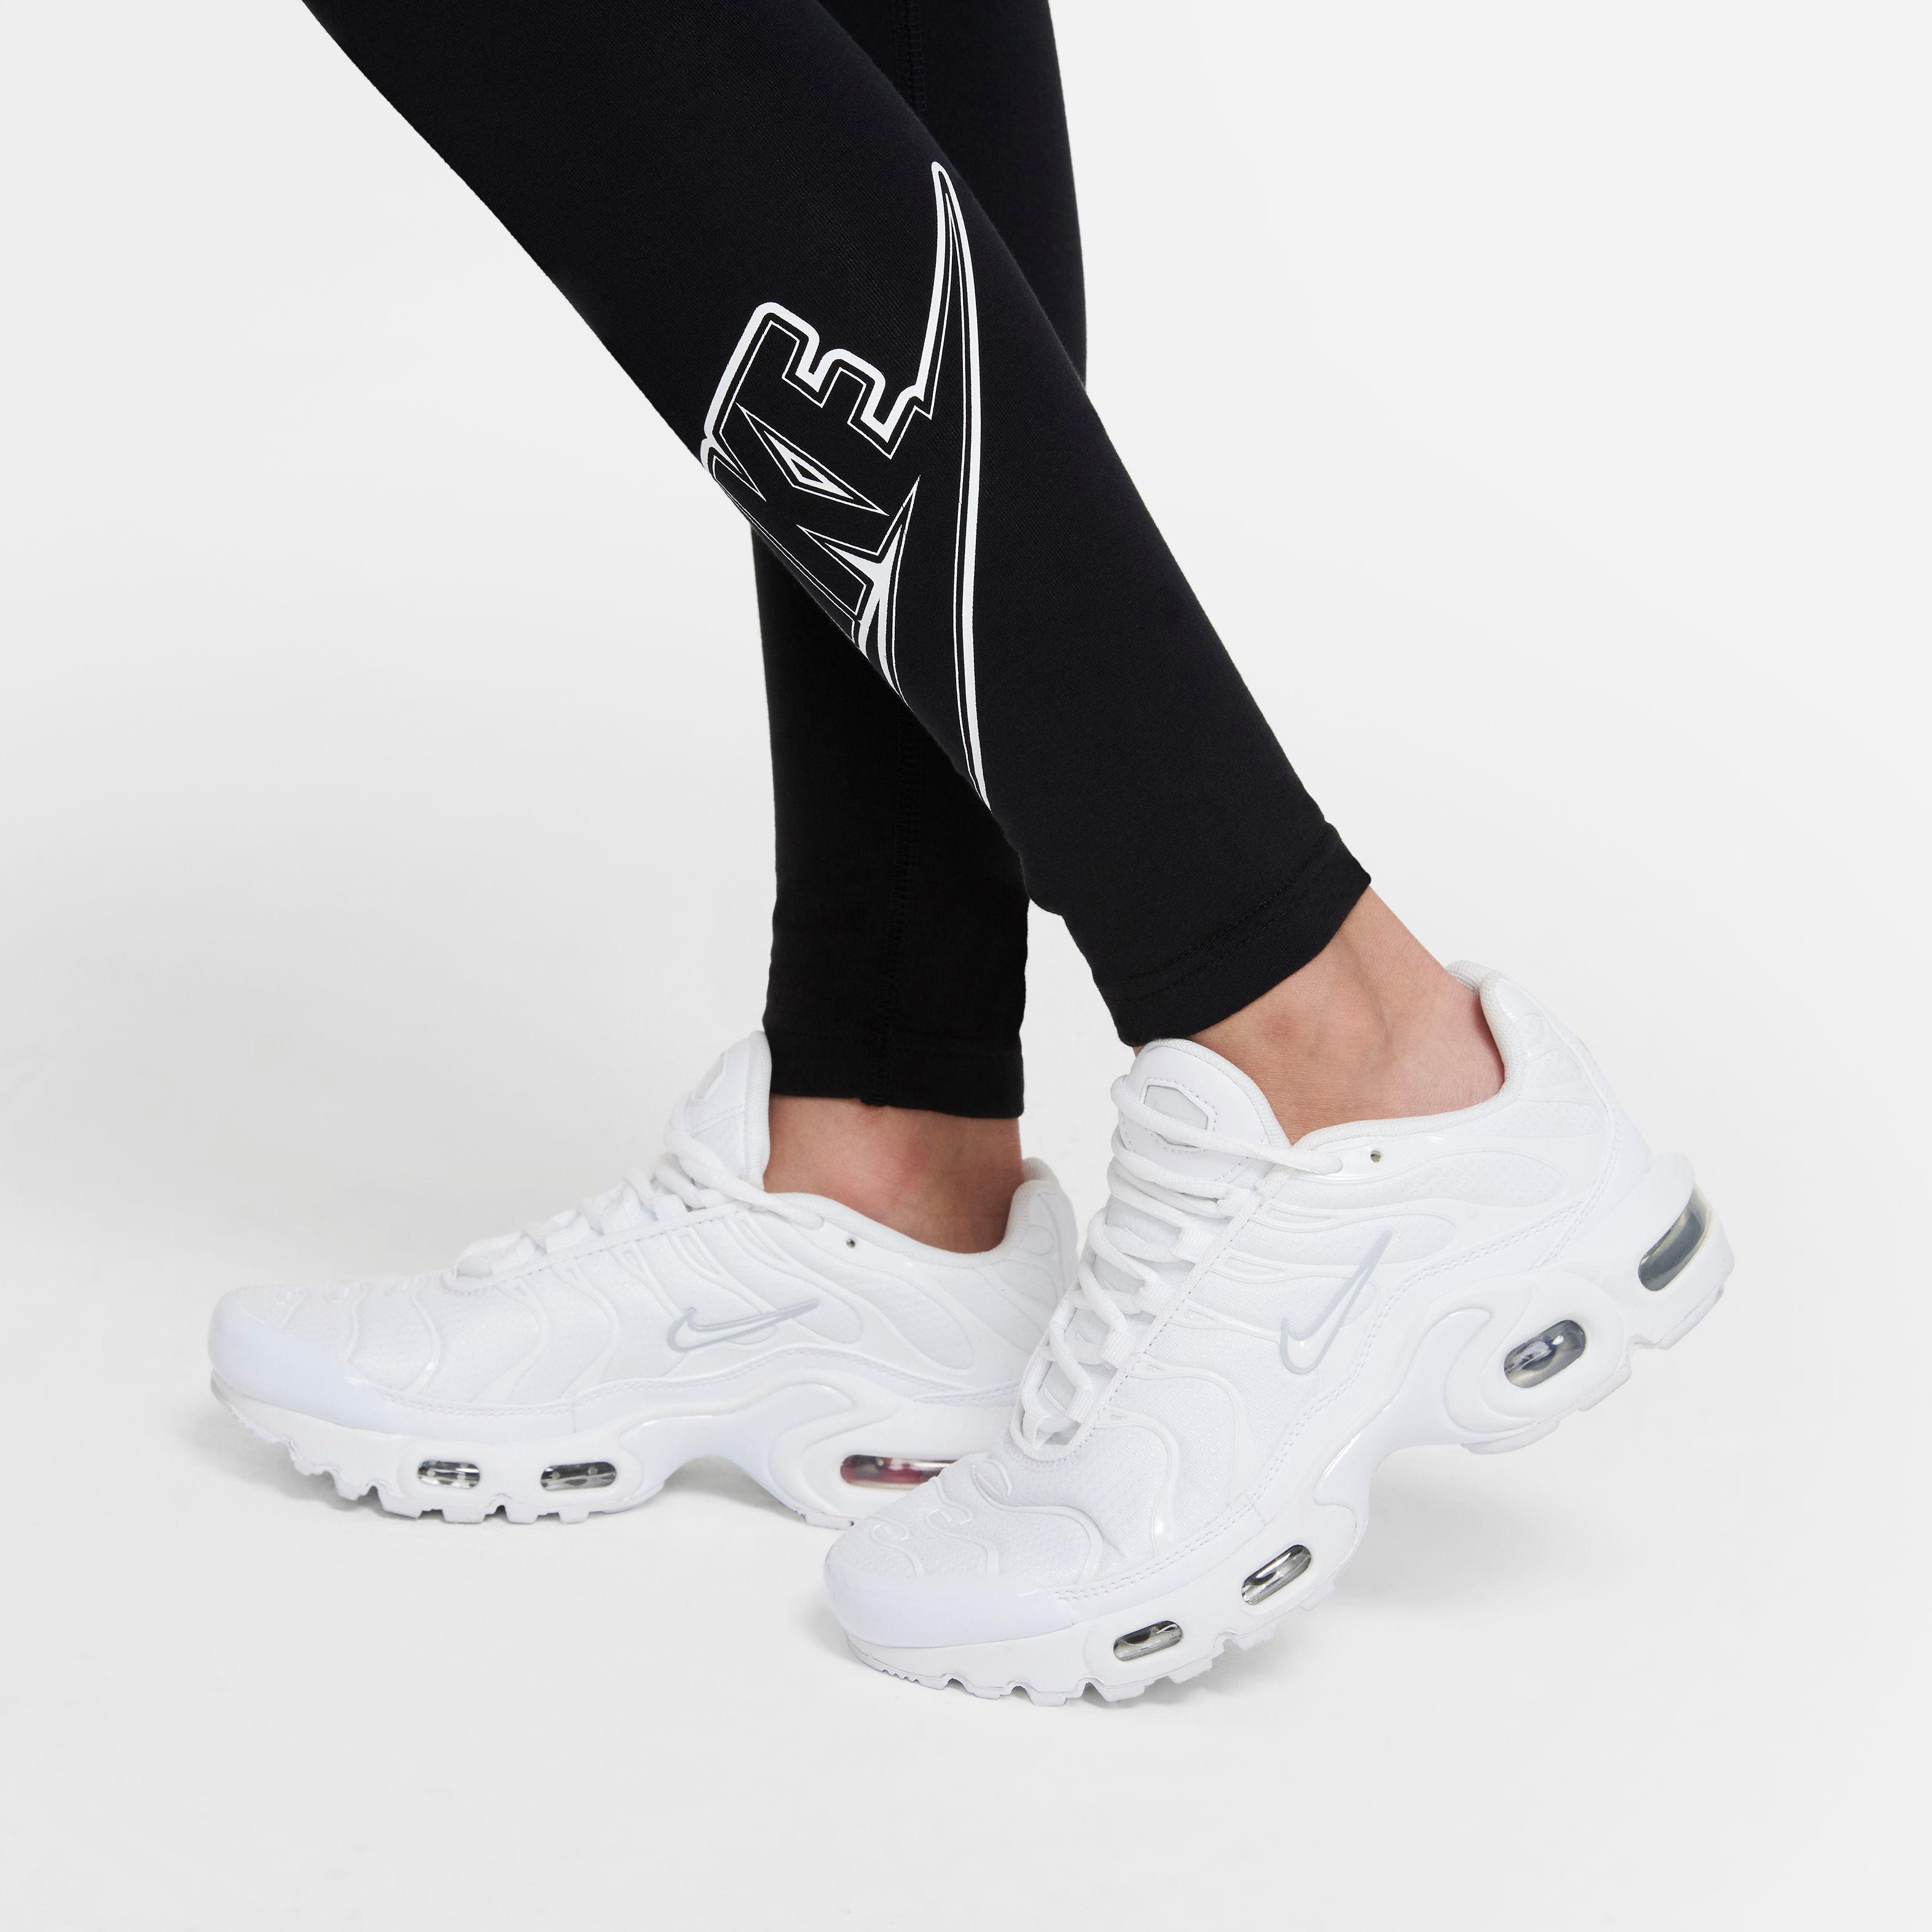 Nike NSW FAVORITES Leggings Mädchen black-white im Online Shop von